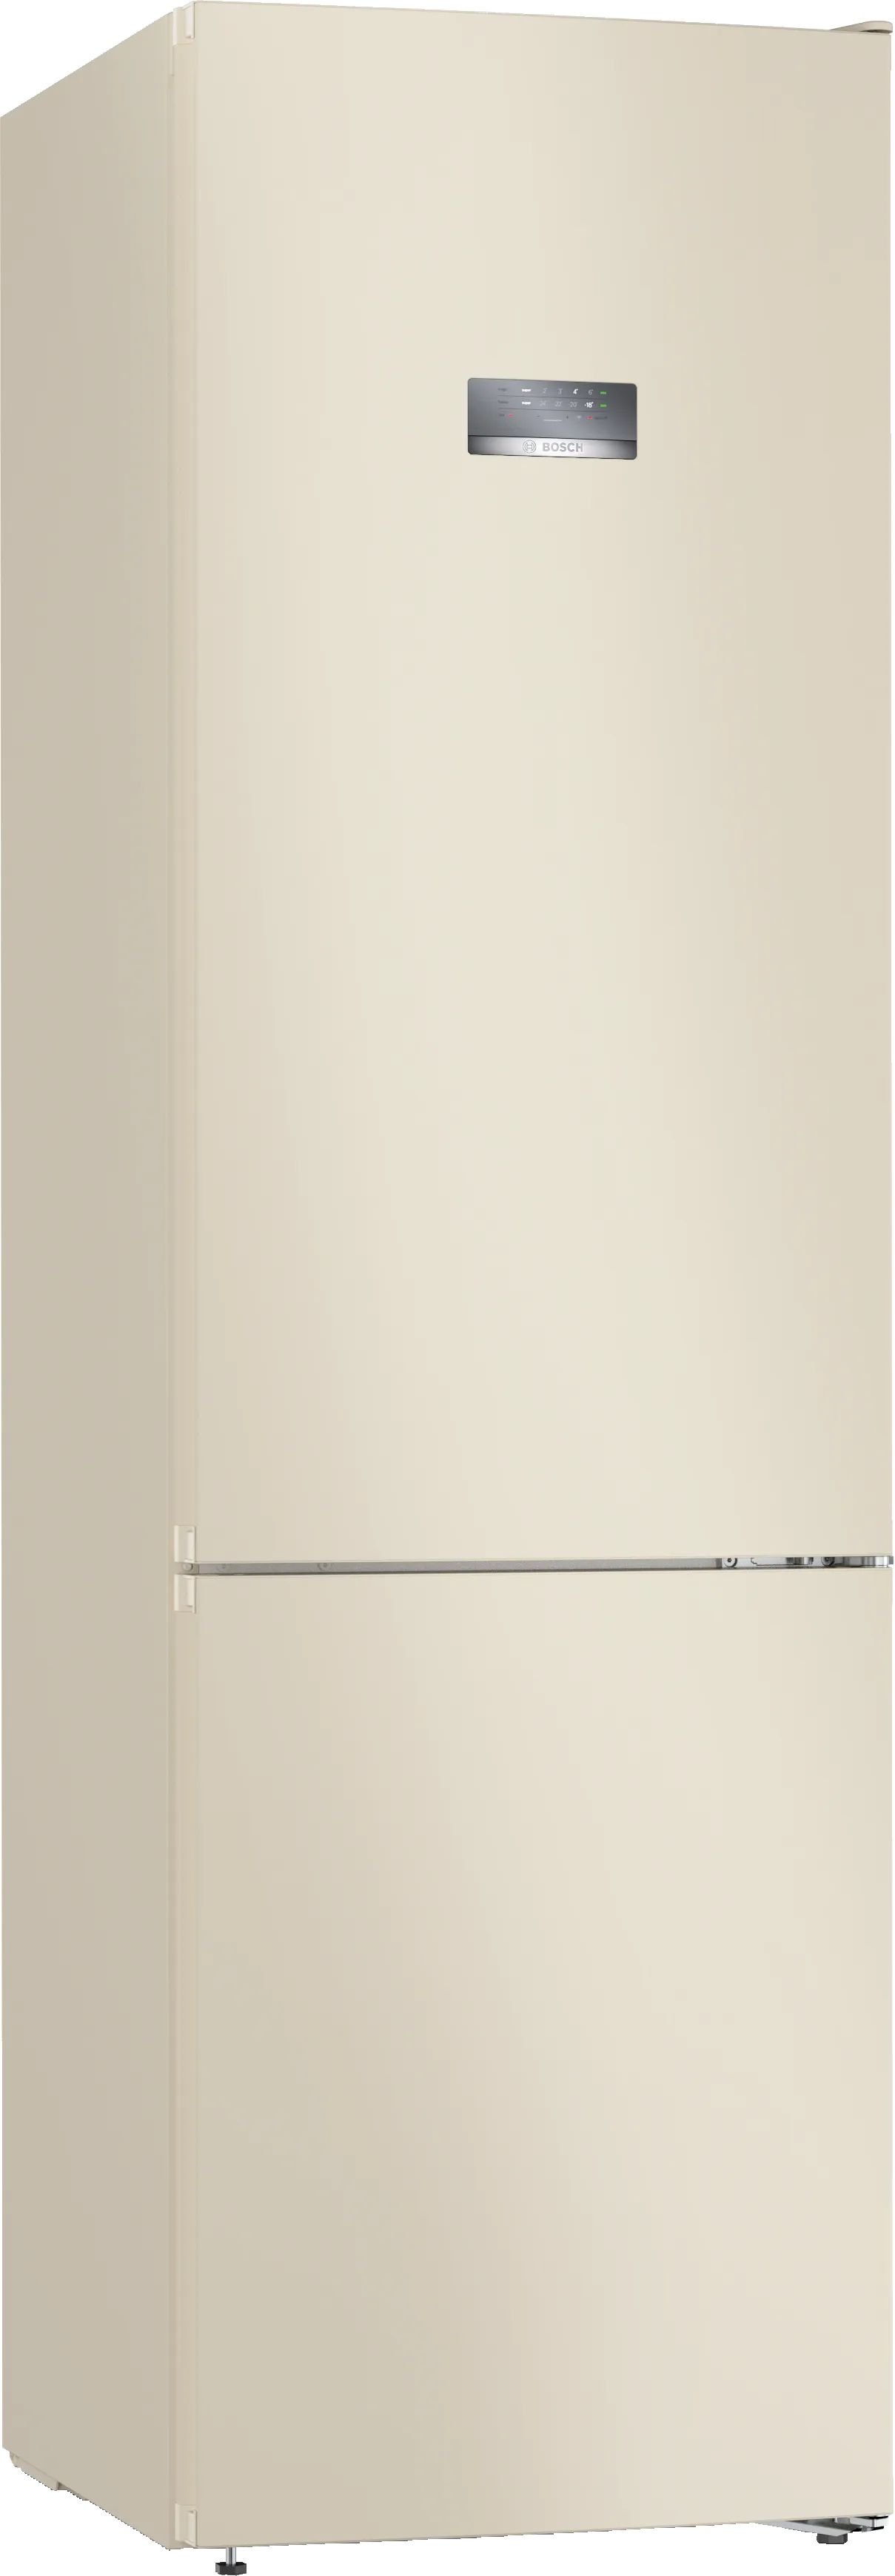 Серия 4 Отдельностоящий холодильник с нижней морозильной камерой 203 x 60 cm Бежевый 